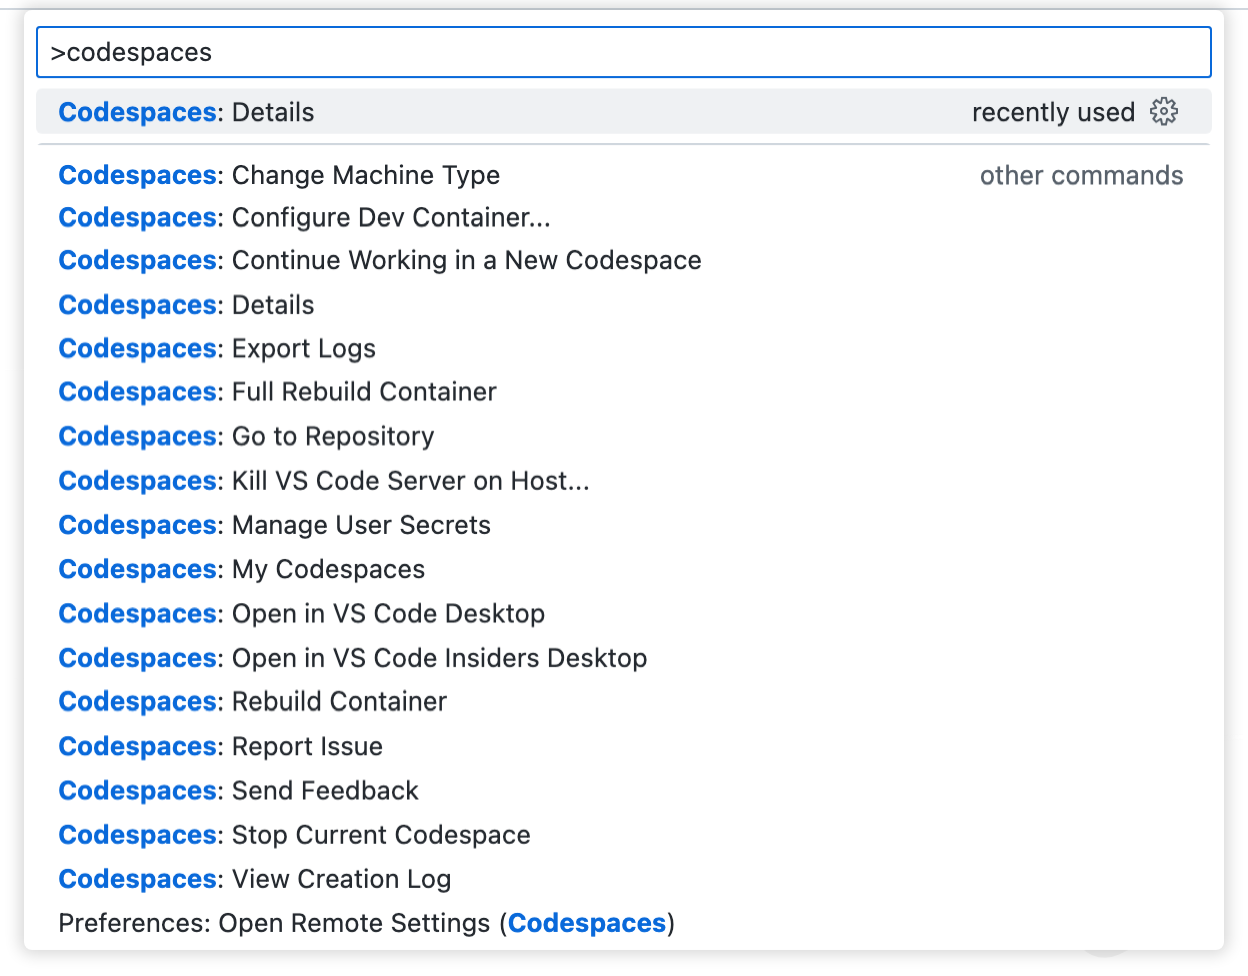 "codespaces"가 입력된 명령 팔레트의 스크린샷 드롭다운에는 GitHub Codespaces에 관련된 모든 명령이 나열됩니다.